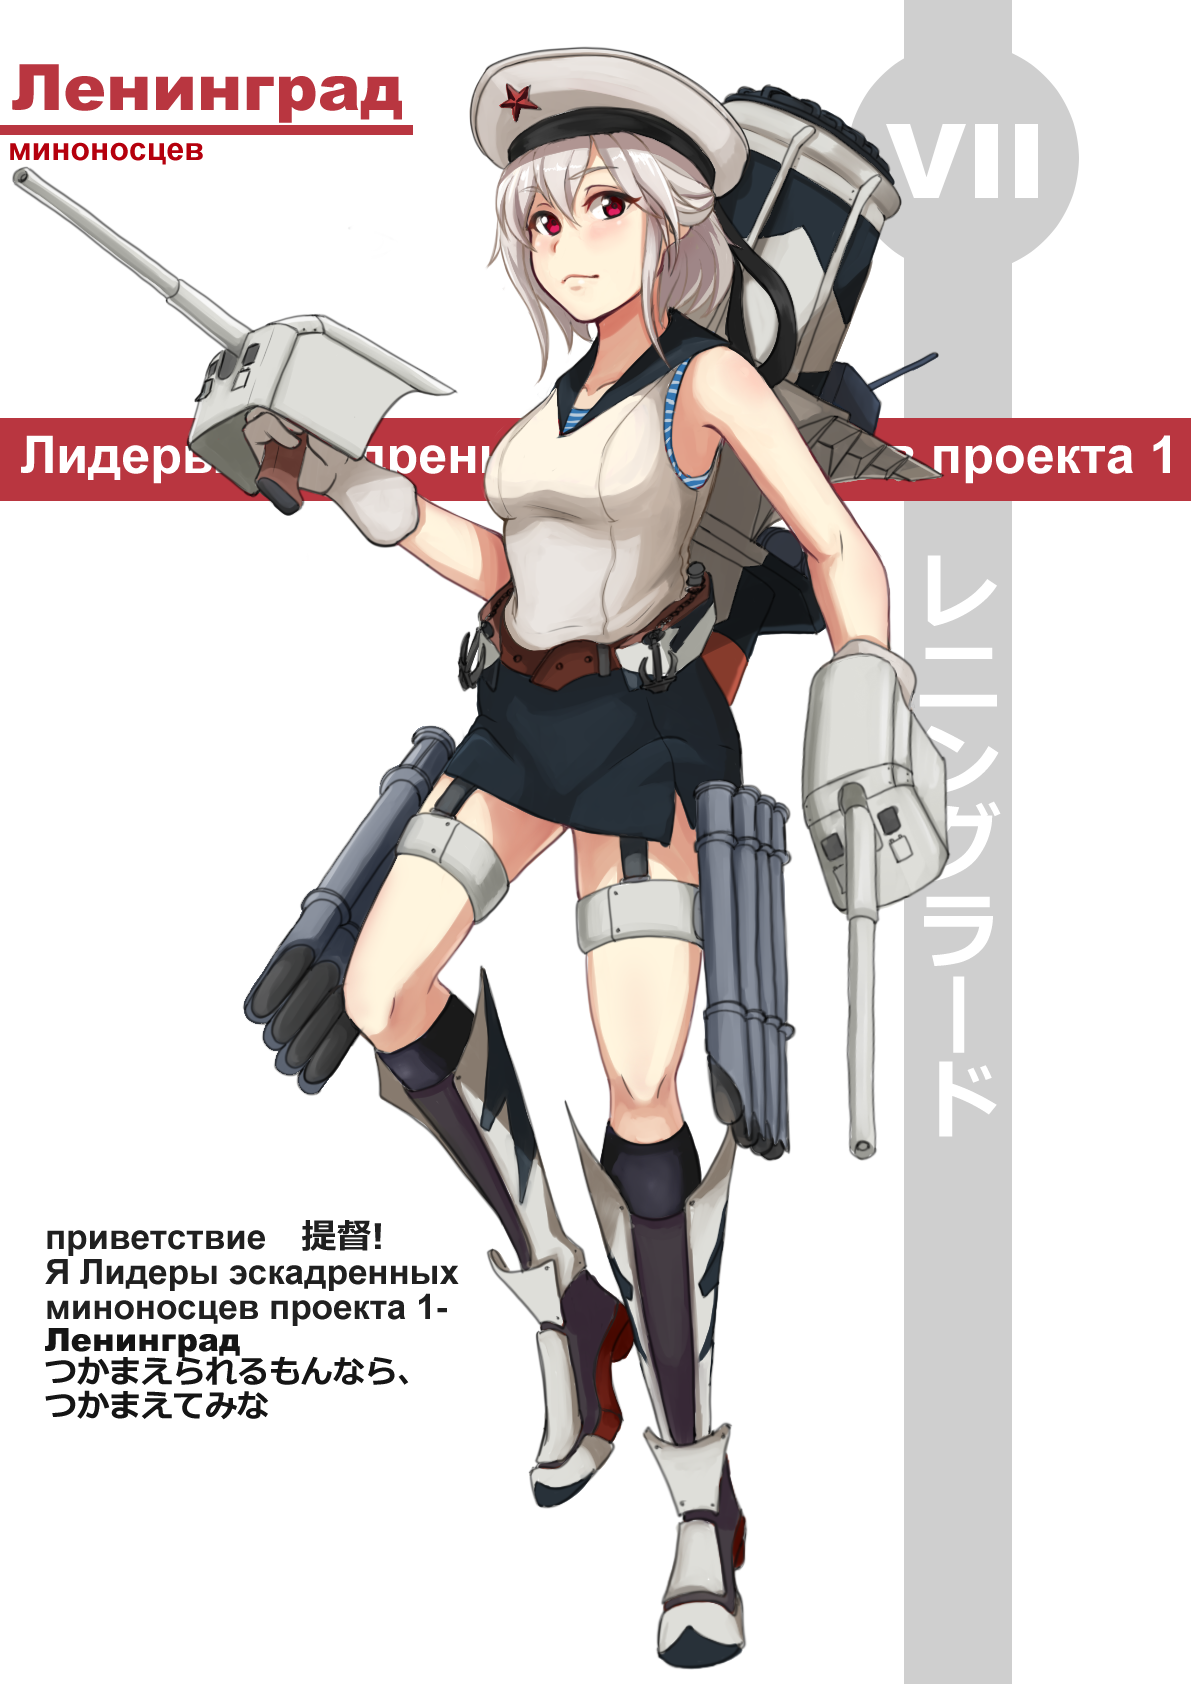 [舰艇这个xWoWS]驱逐舰列宁格莱德插画图片壁纸